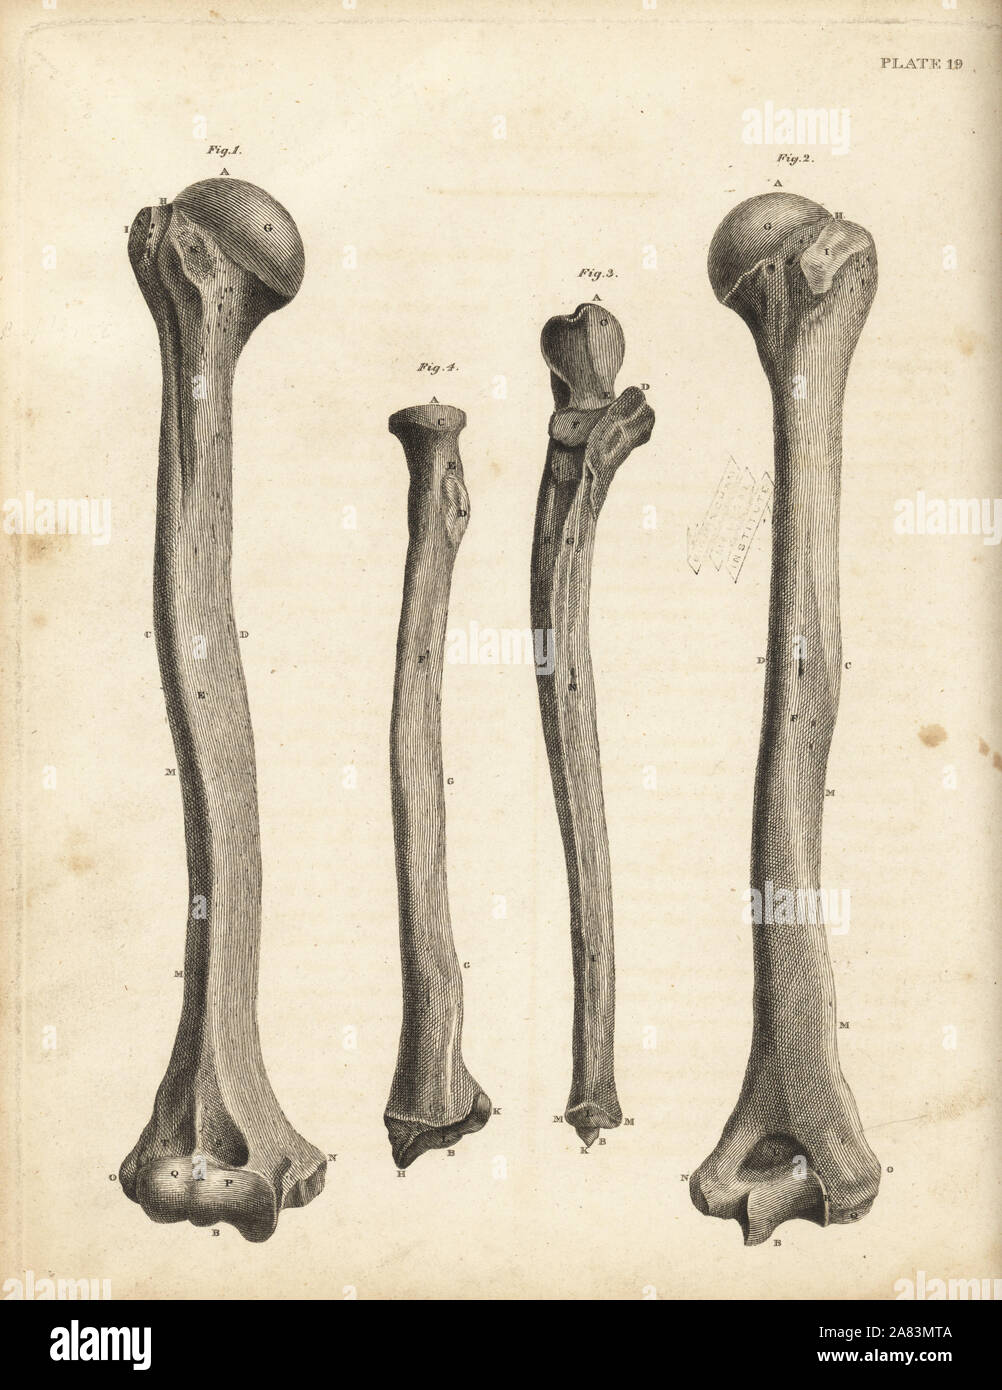 Blick auf den Radius und ULNA Knochen im menschlichen Arm. Kupferstich von Edward Mitchell nachdem eine anatomische Abbildung kann von John Barclay's eine Reihe von Stichen des menschlichen Skeletts, MacLachlan und Stewart, Edinburgh, 1824. Stockfoto